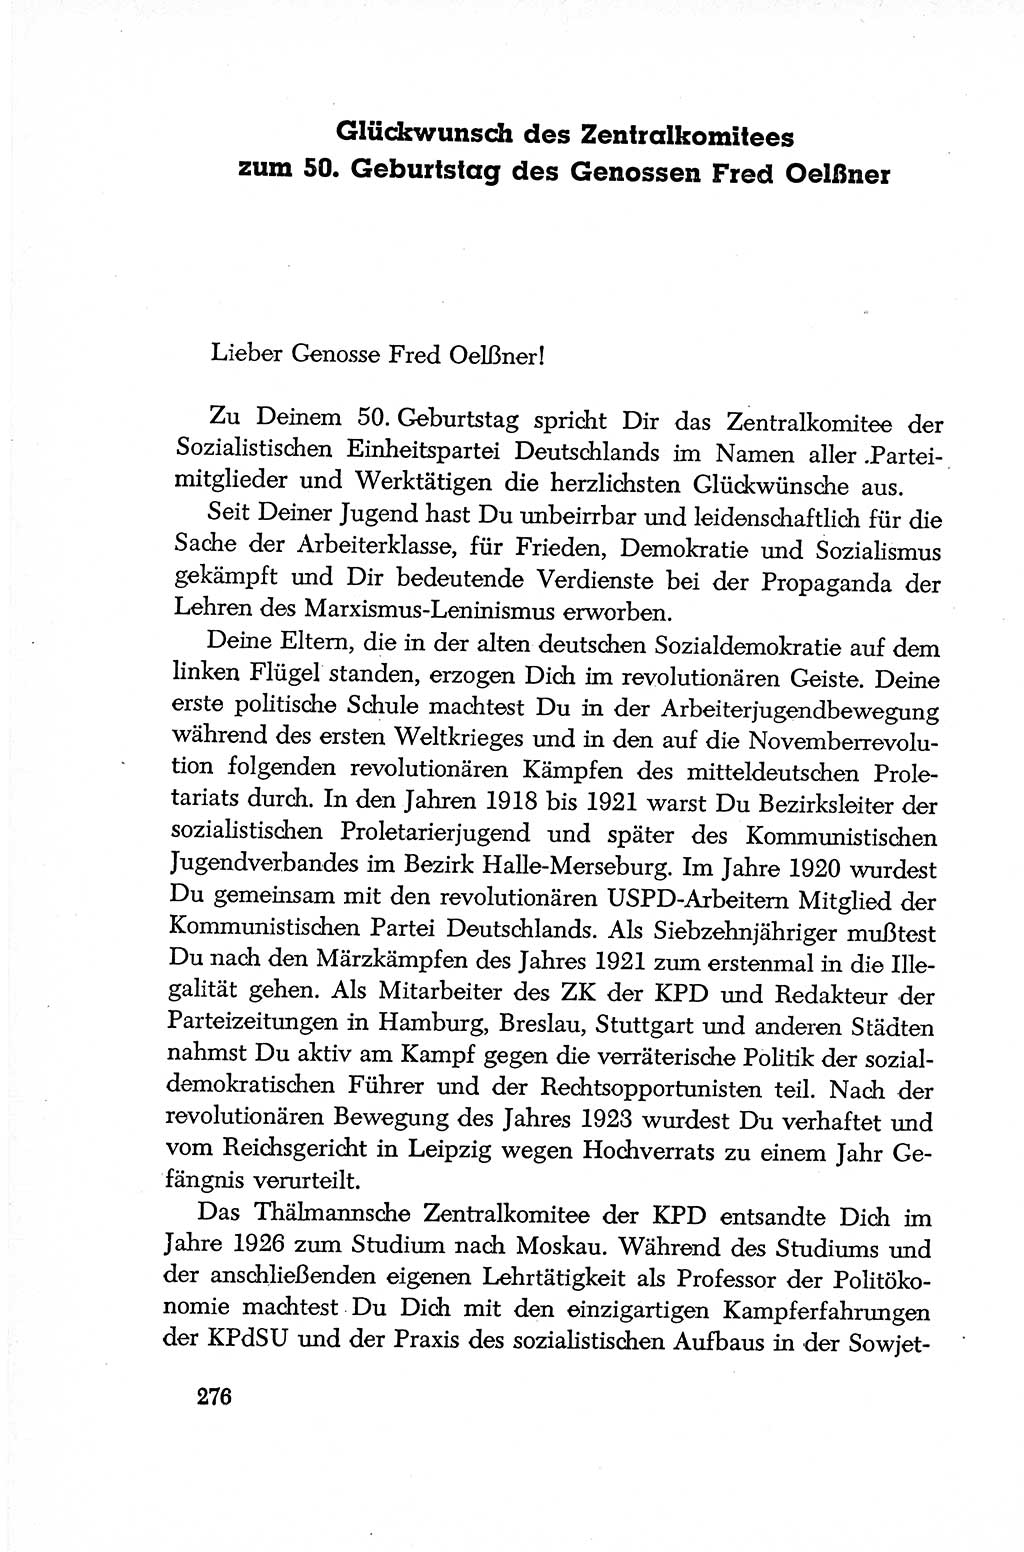 Dokumente der Sozialistischen Einheitspartei Deutschlands (SED) [Deutsche Demokratische Republik (DDR)] 1952-1953, Seite 276 (Dok. SED DDR 1952-1953, S. 276)